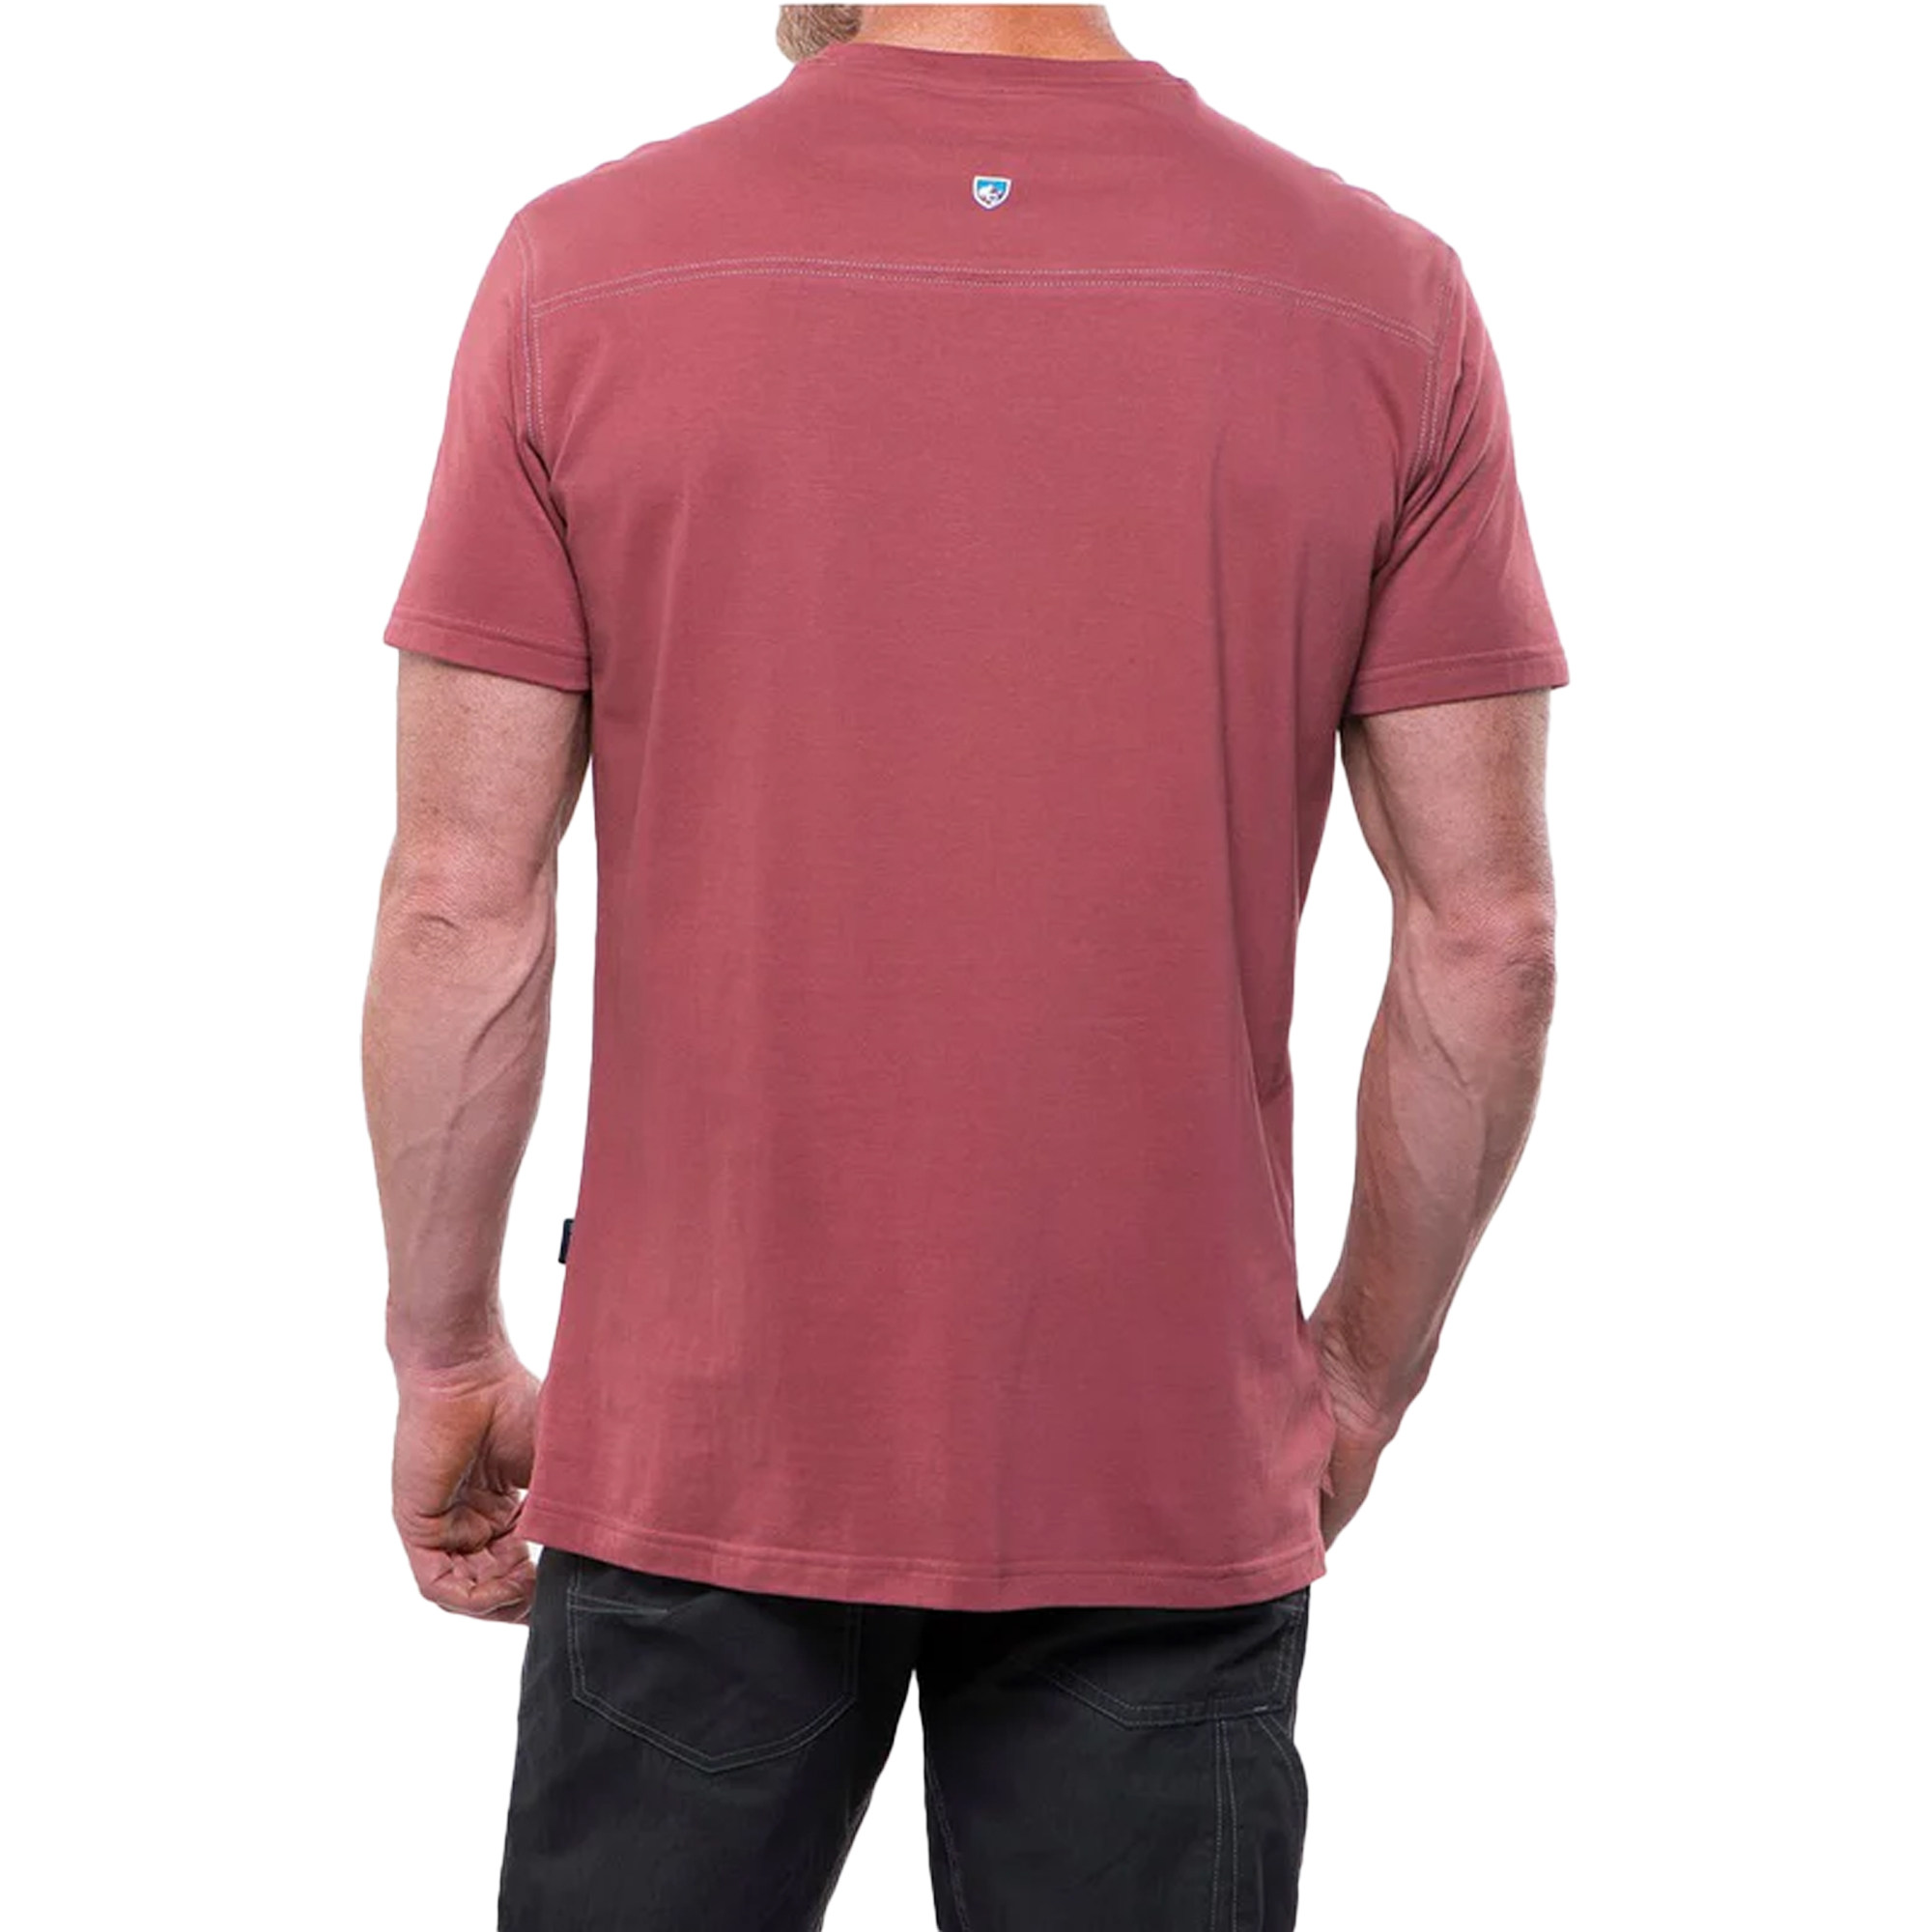 Kuhl Bravado Short Sleeve T-Shirt